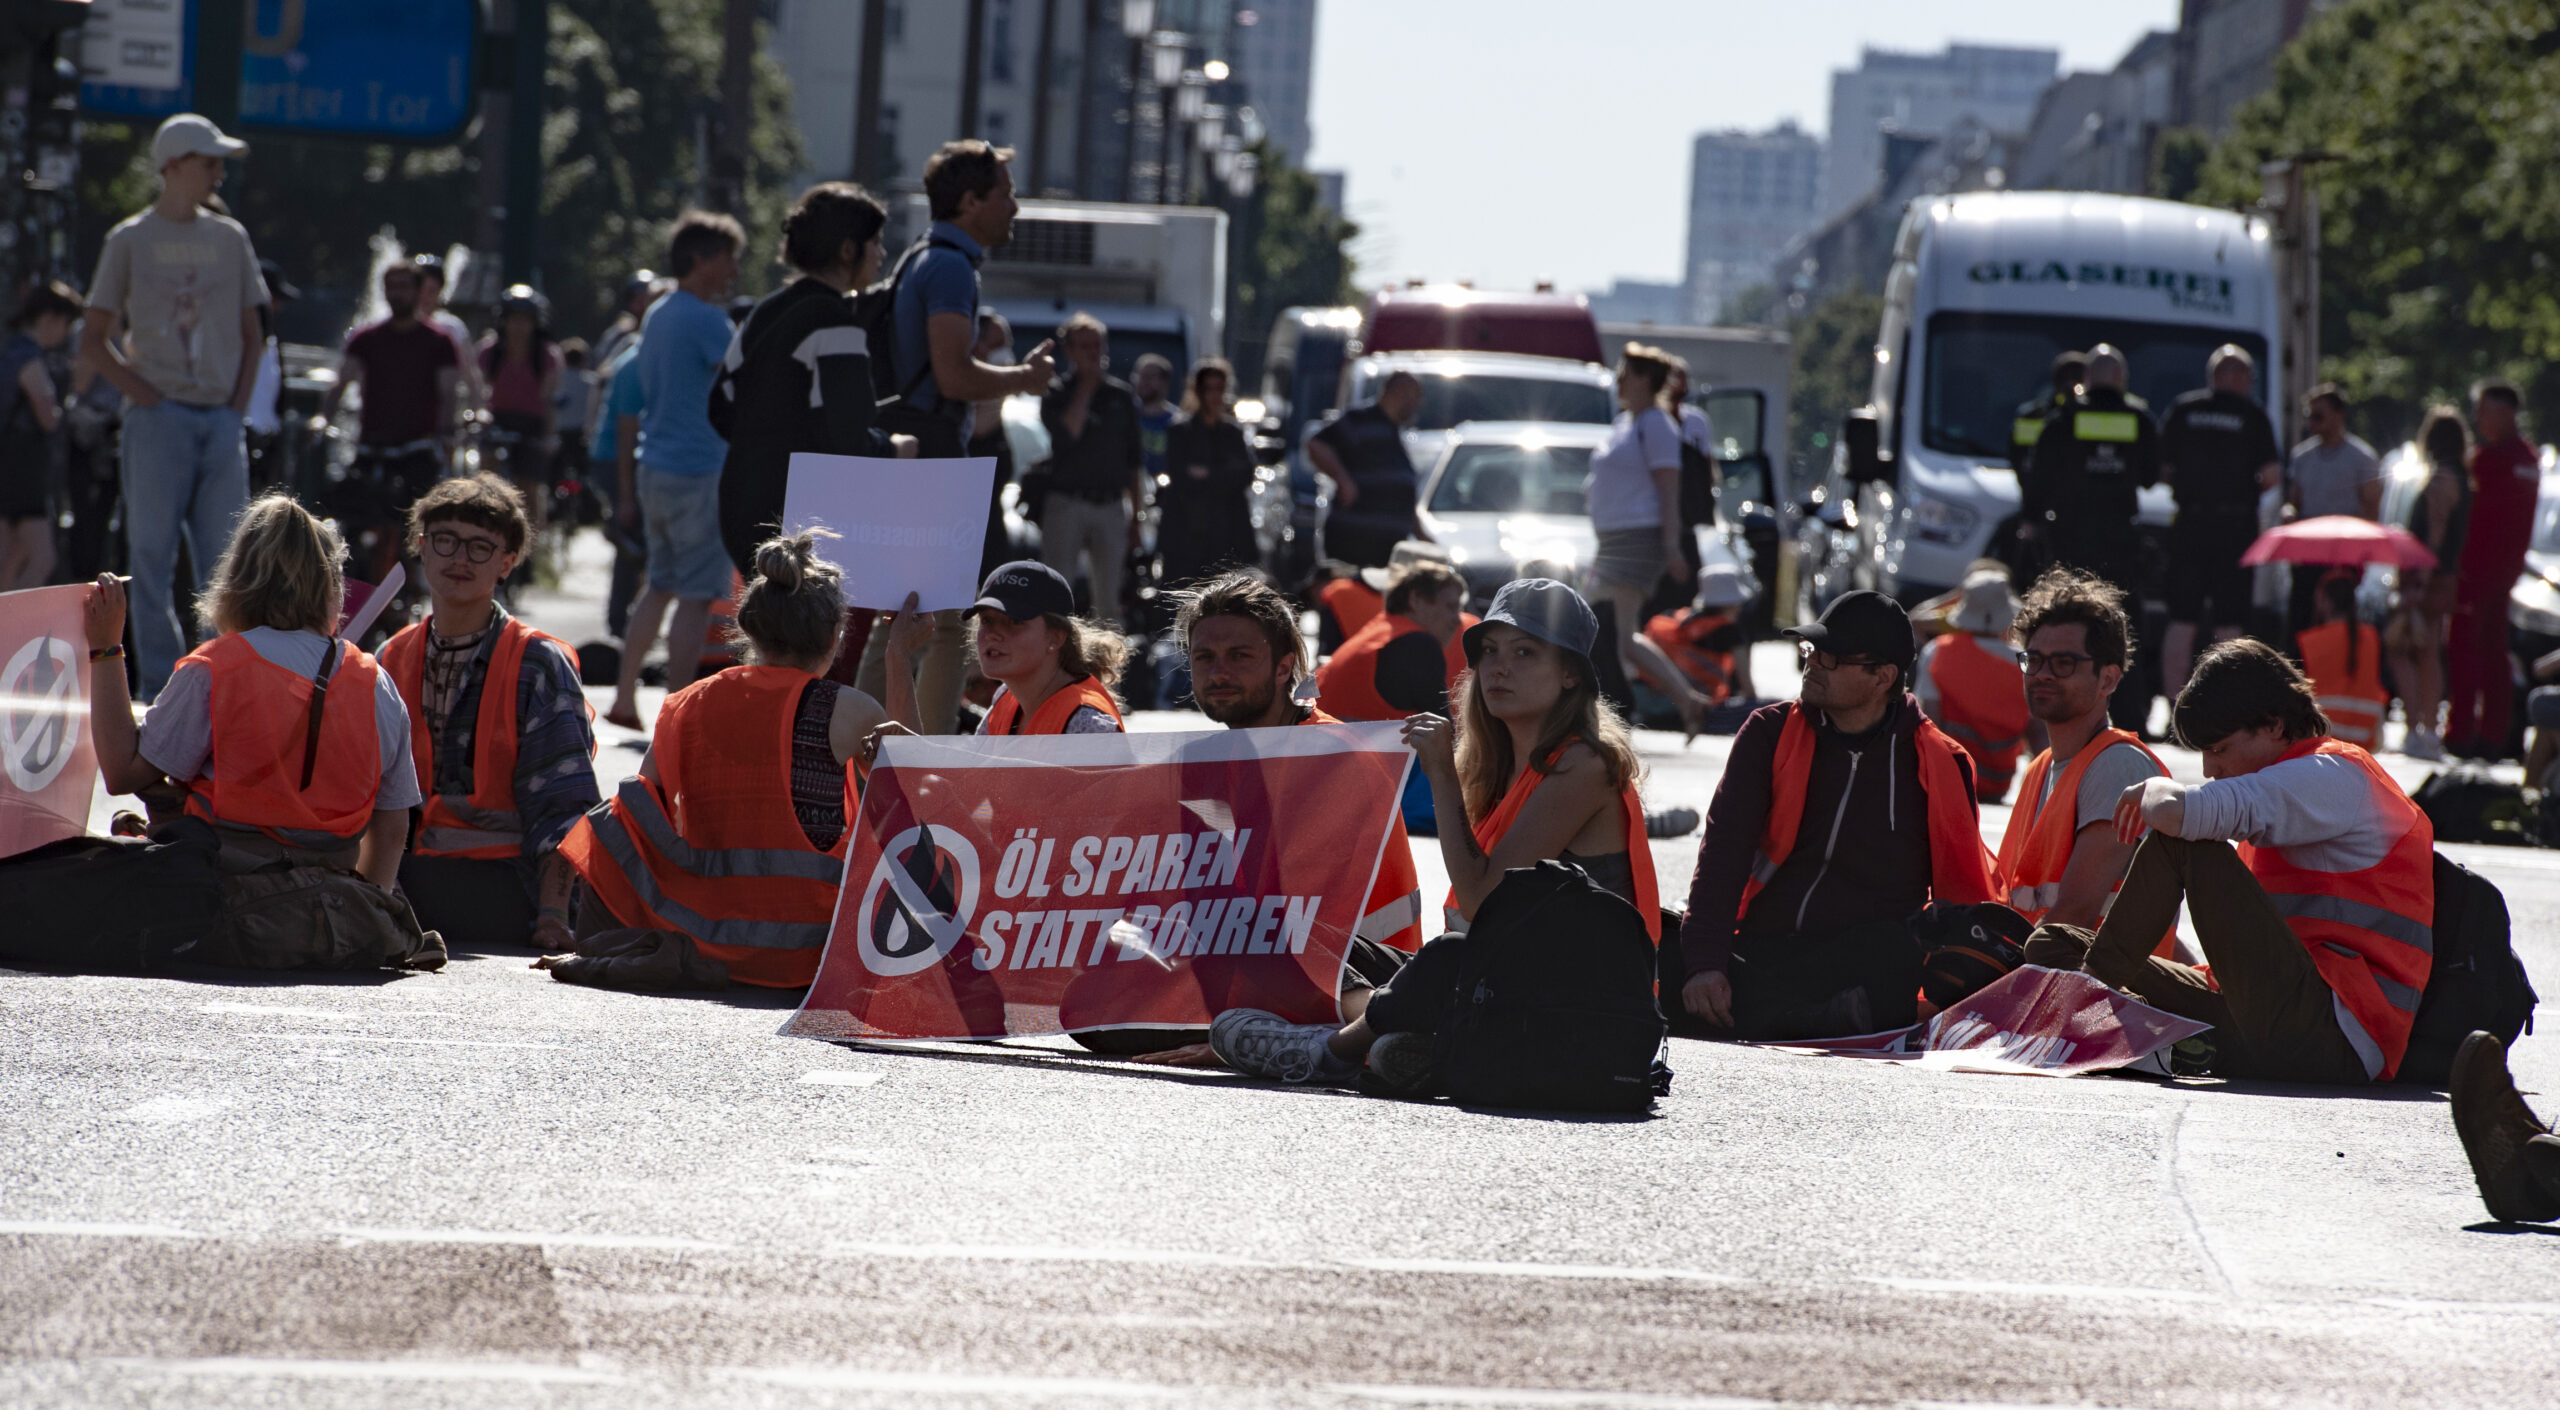 Demonstrierende blockieren eine Straße